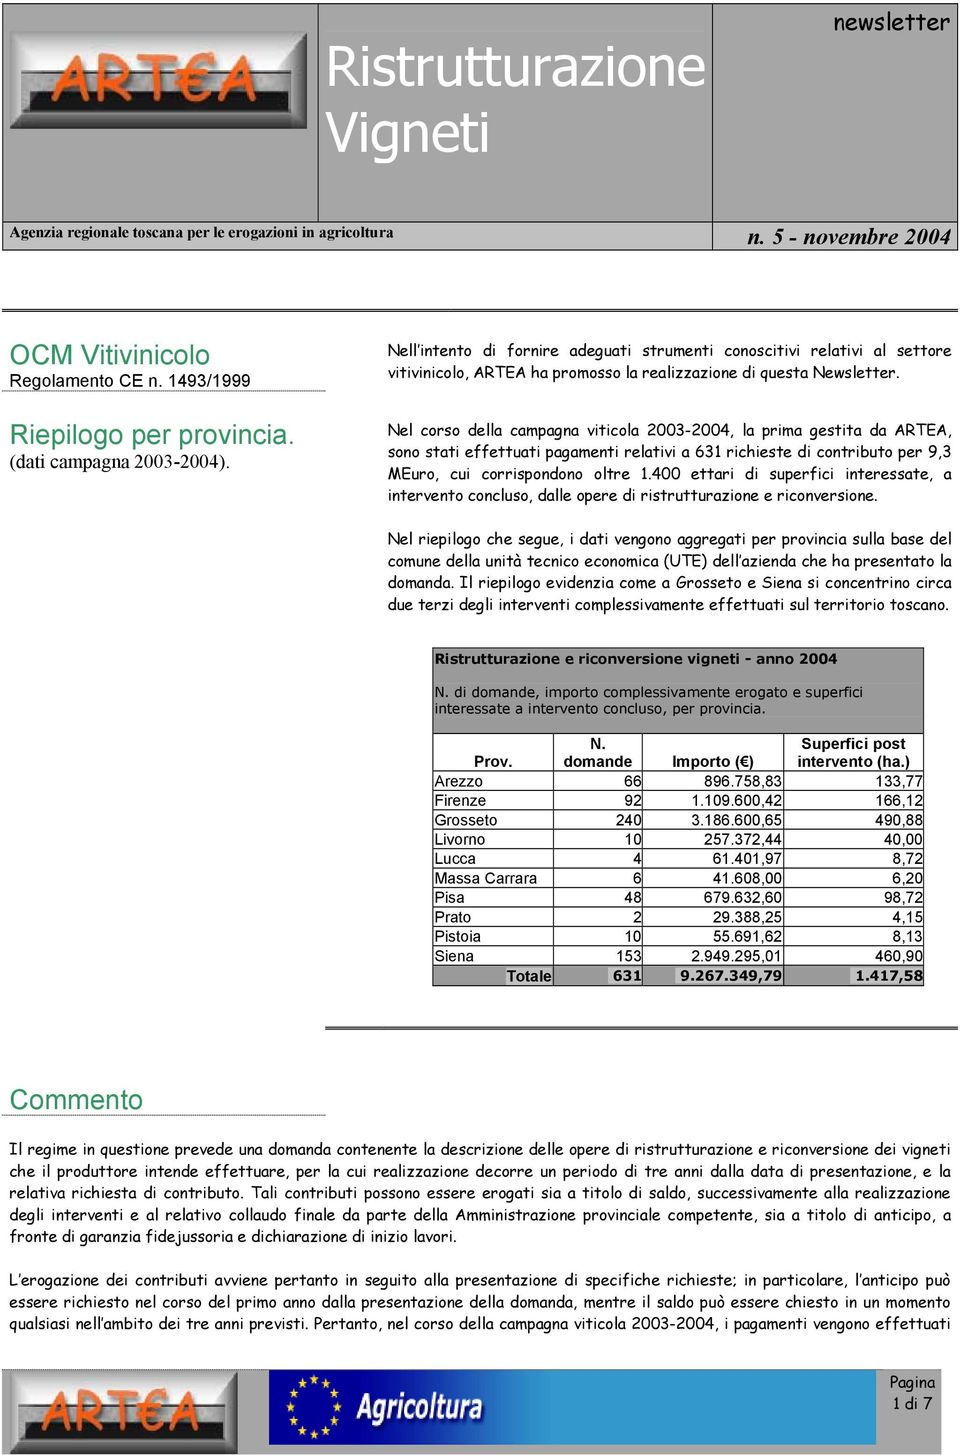 Nel corso della campagna viticola 2003-2004, la prima gestita da ARTEA, sono stati effettuati pagamenti relativi a 631 richieste di contributo per 9,3 MEuro, cui corrispondono oltre 1.